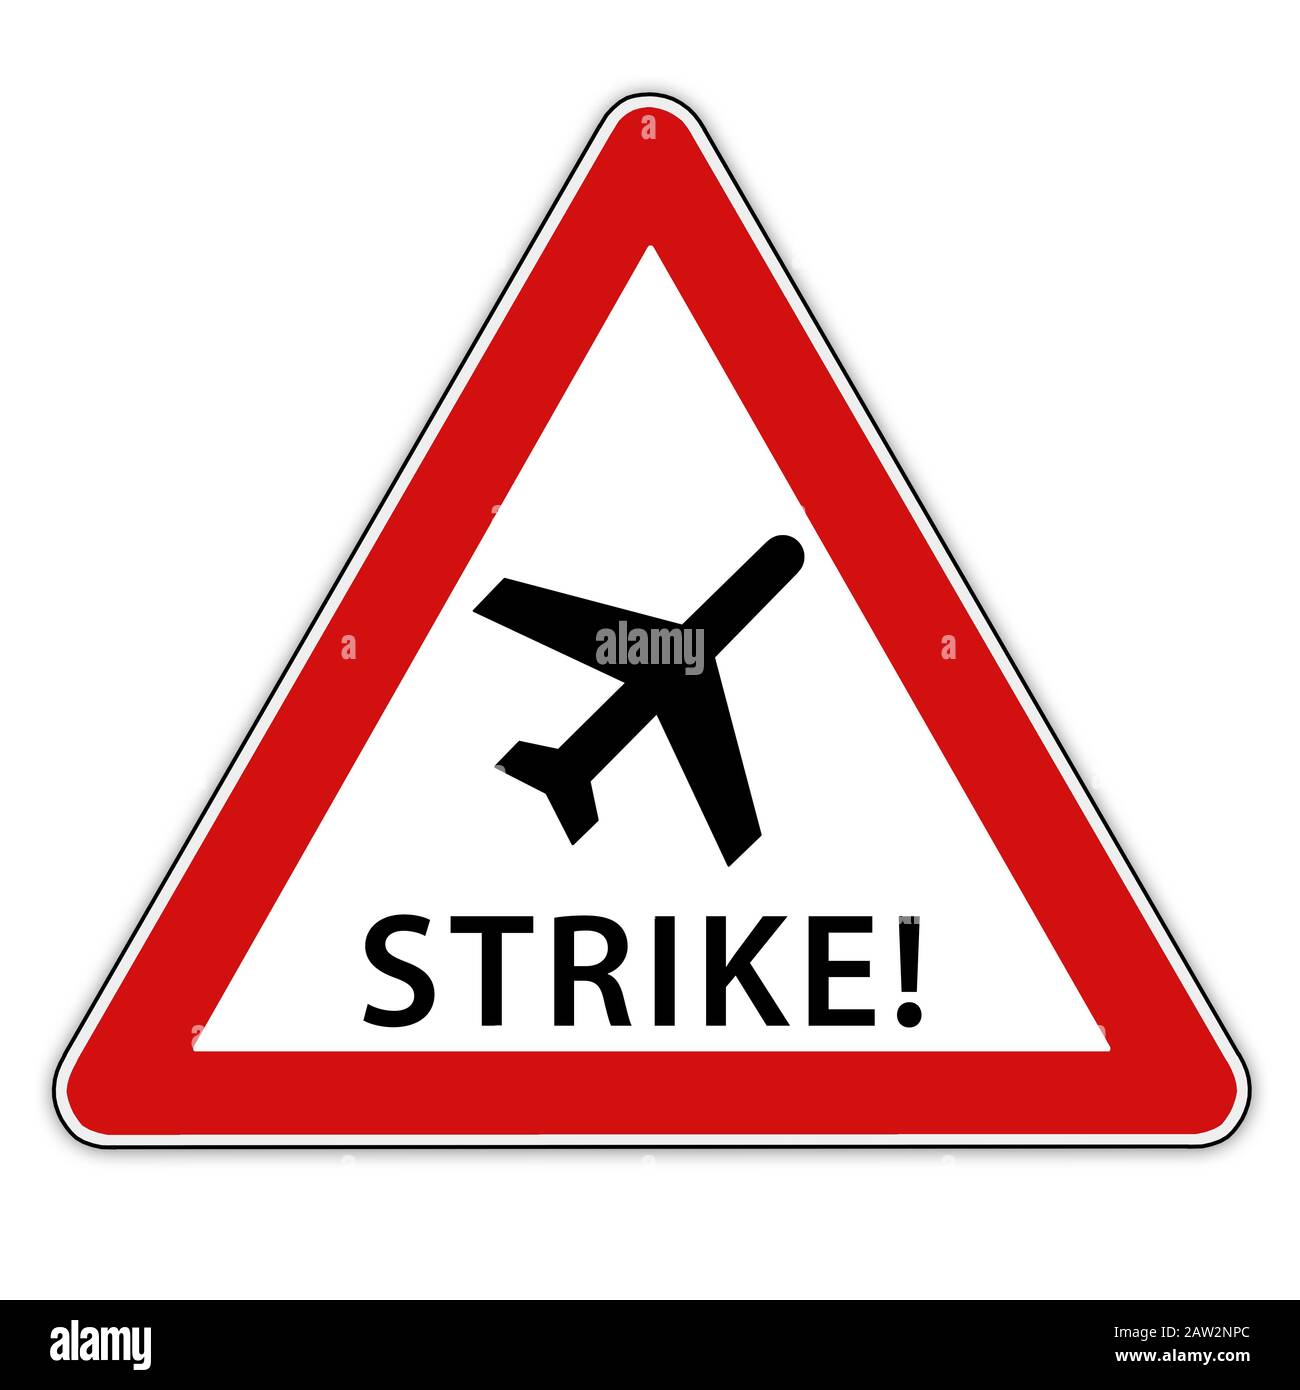 Isolierten roten/weißen Verkehrsschild mit dem Flugzeug symbolisch für Streik Stockfoto